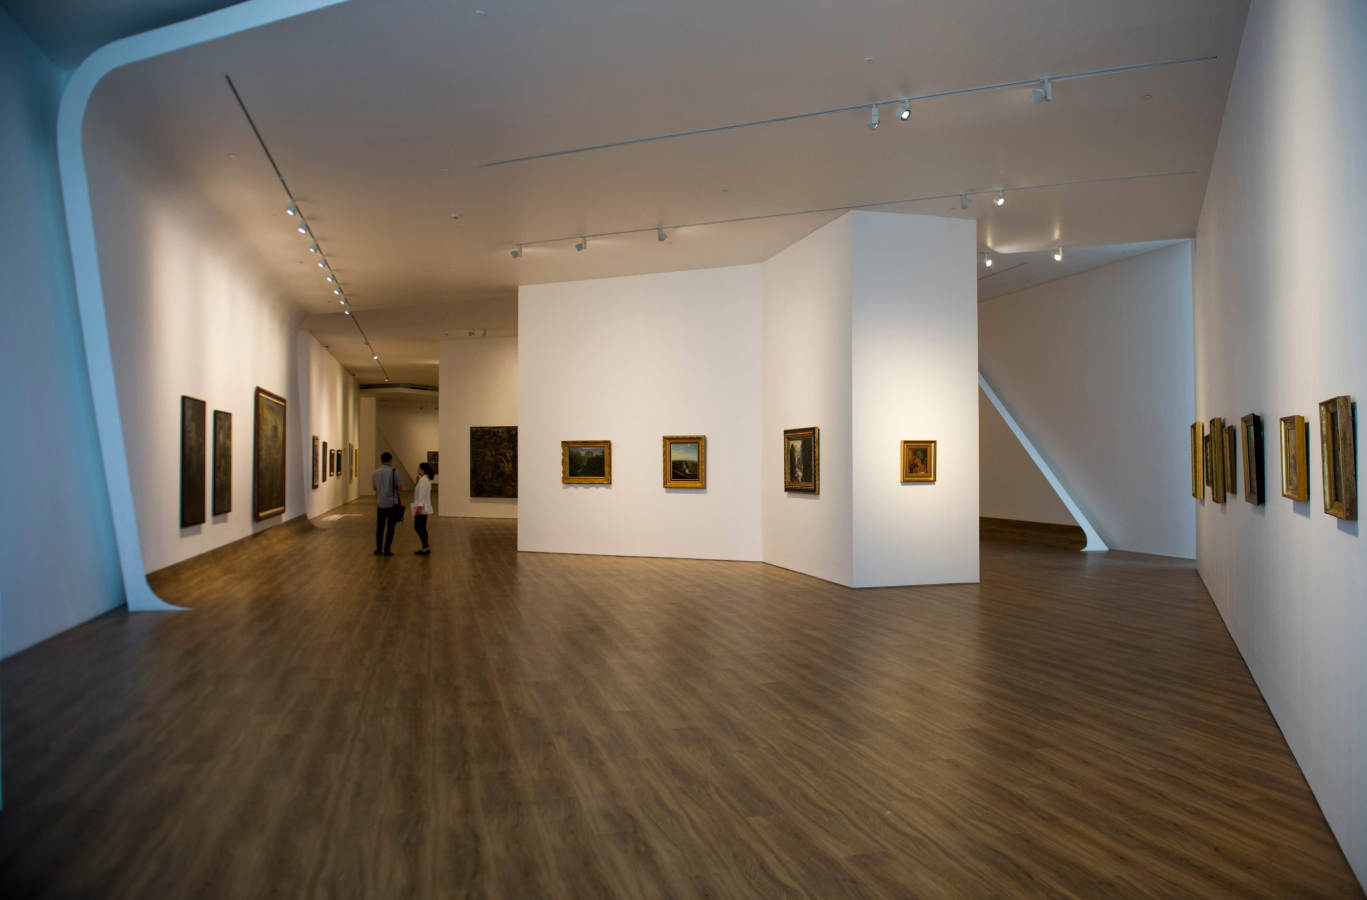 La primera galería internacional de arte contemporáneo de Indonesia se inaugurará el 4 de noviembre, y reunirá obras de Ai Weiwei, Mark Rothko y maestros indonesios en un espacio moderno.